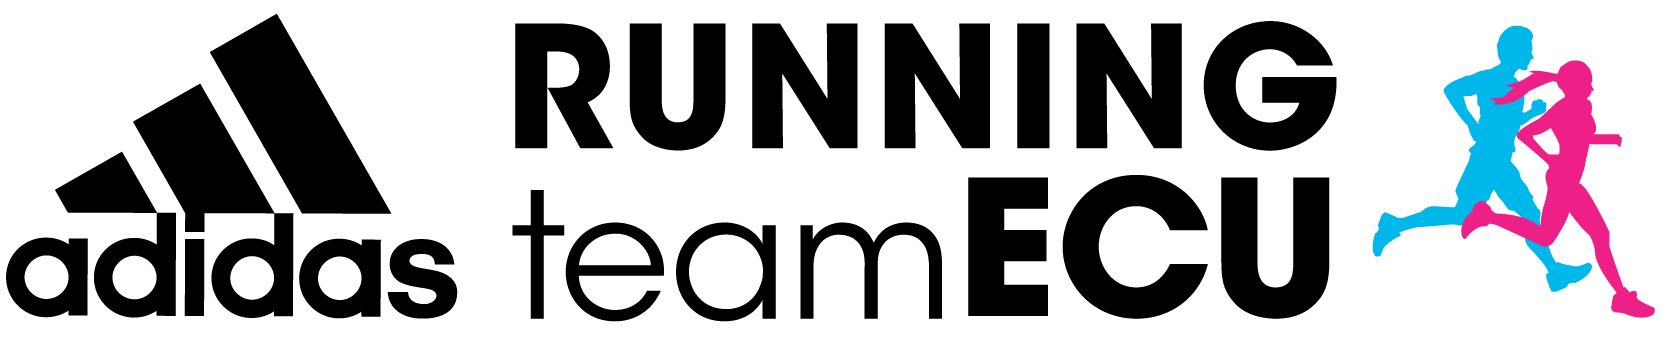 Logo-addidas-running-team-Ecu-2019-version-redes-copia